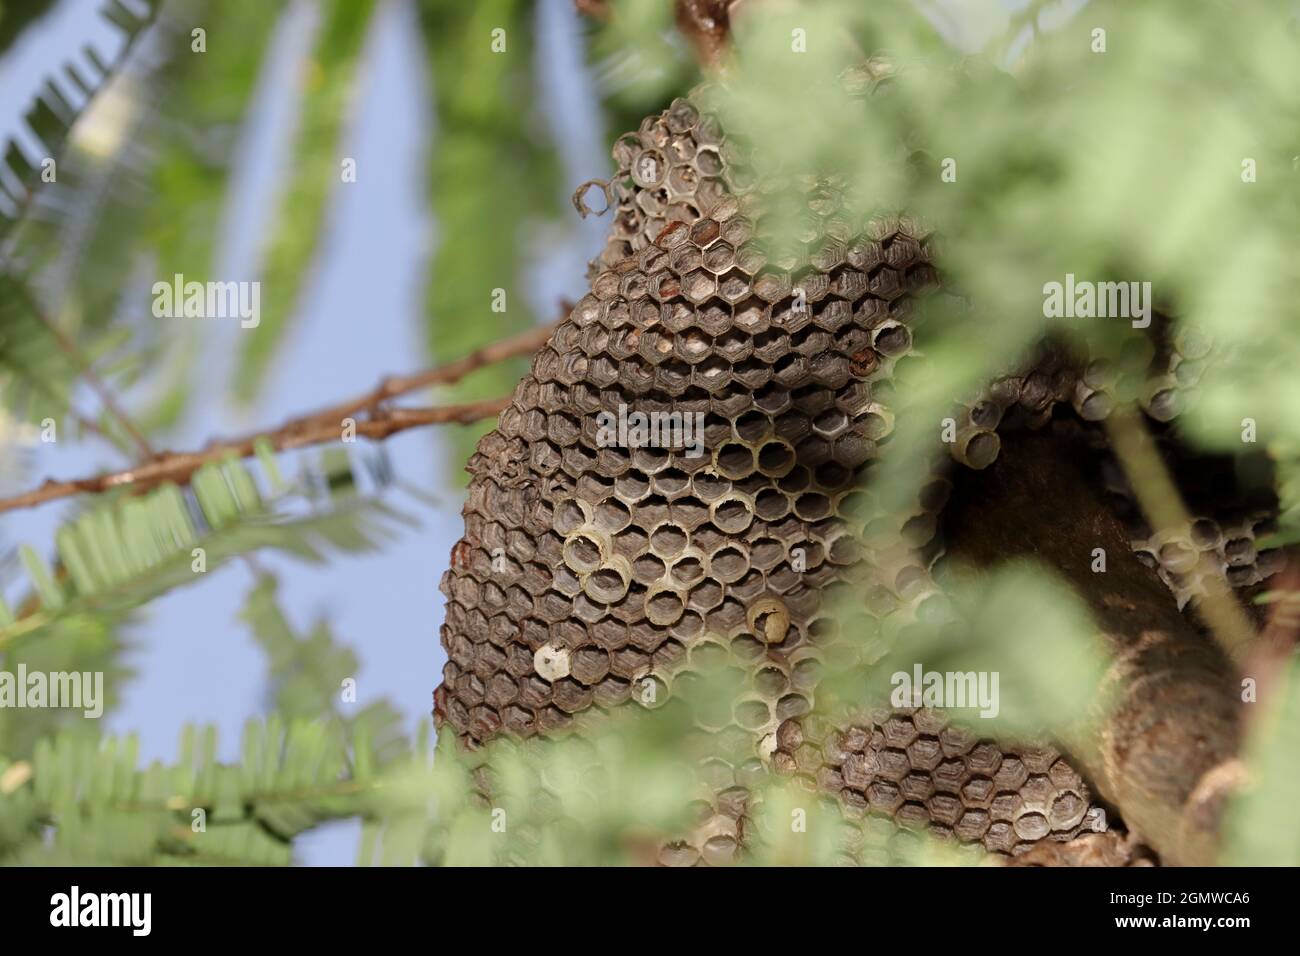 Primo piano di un nido vuoto di una vespa predatoria gialla appesa su un ramo d'albero Foto Stock